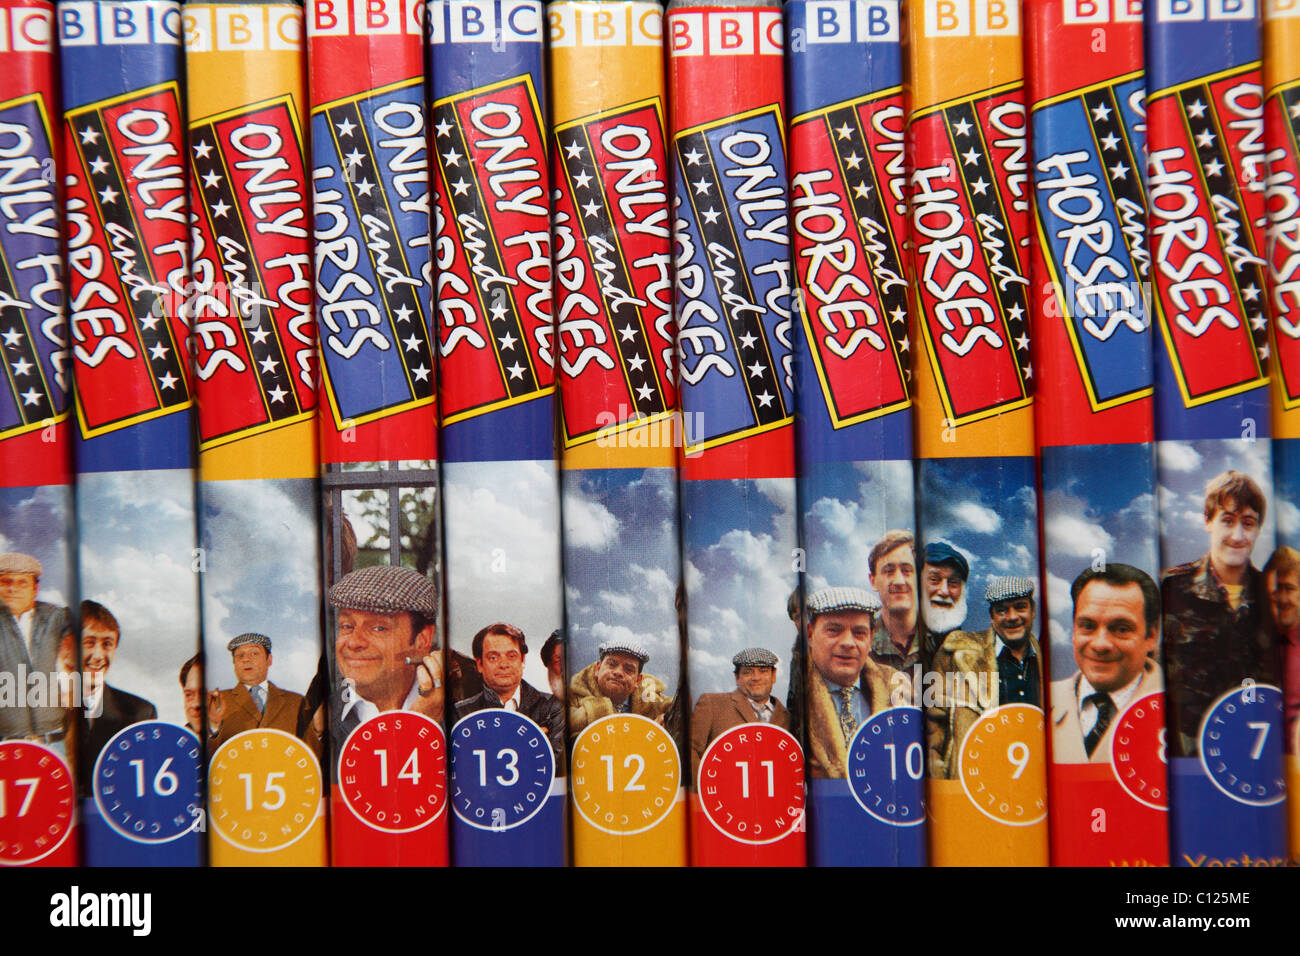 La BBC Seuls les imbéciles et les chevaux comédie TV show collection DVD. Banque D'Images